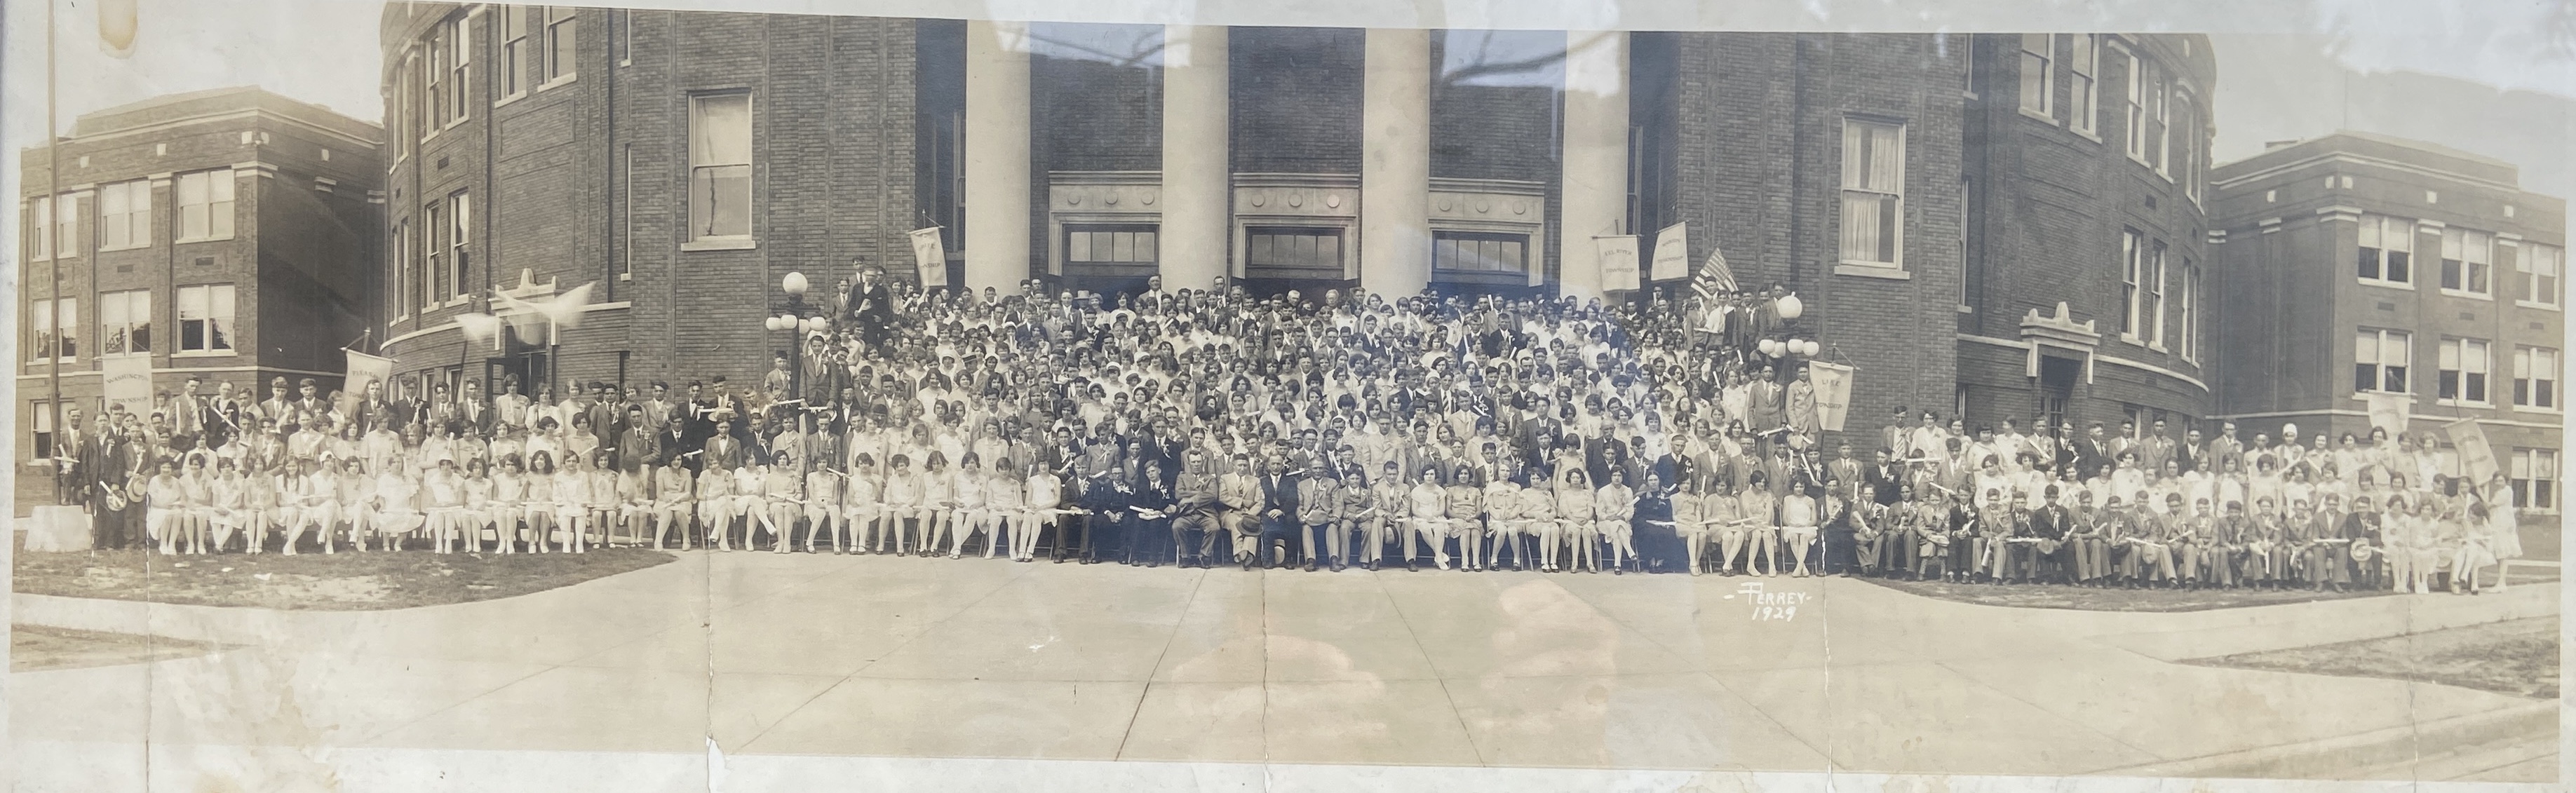 1929 North Side High School 